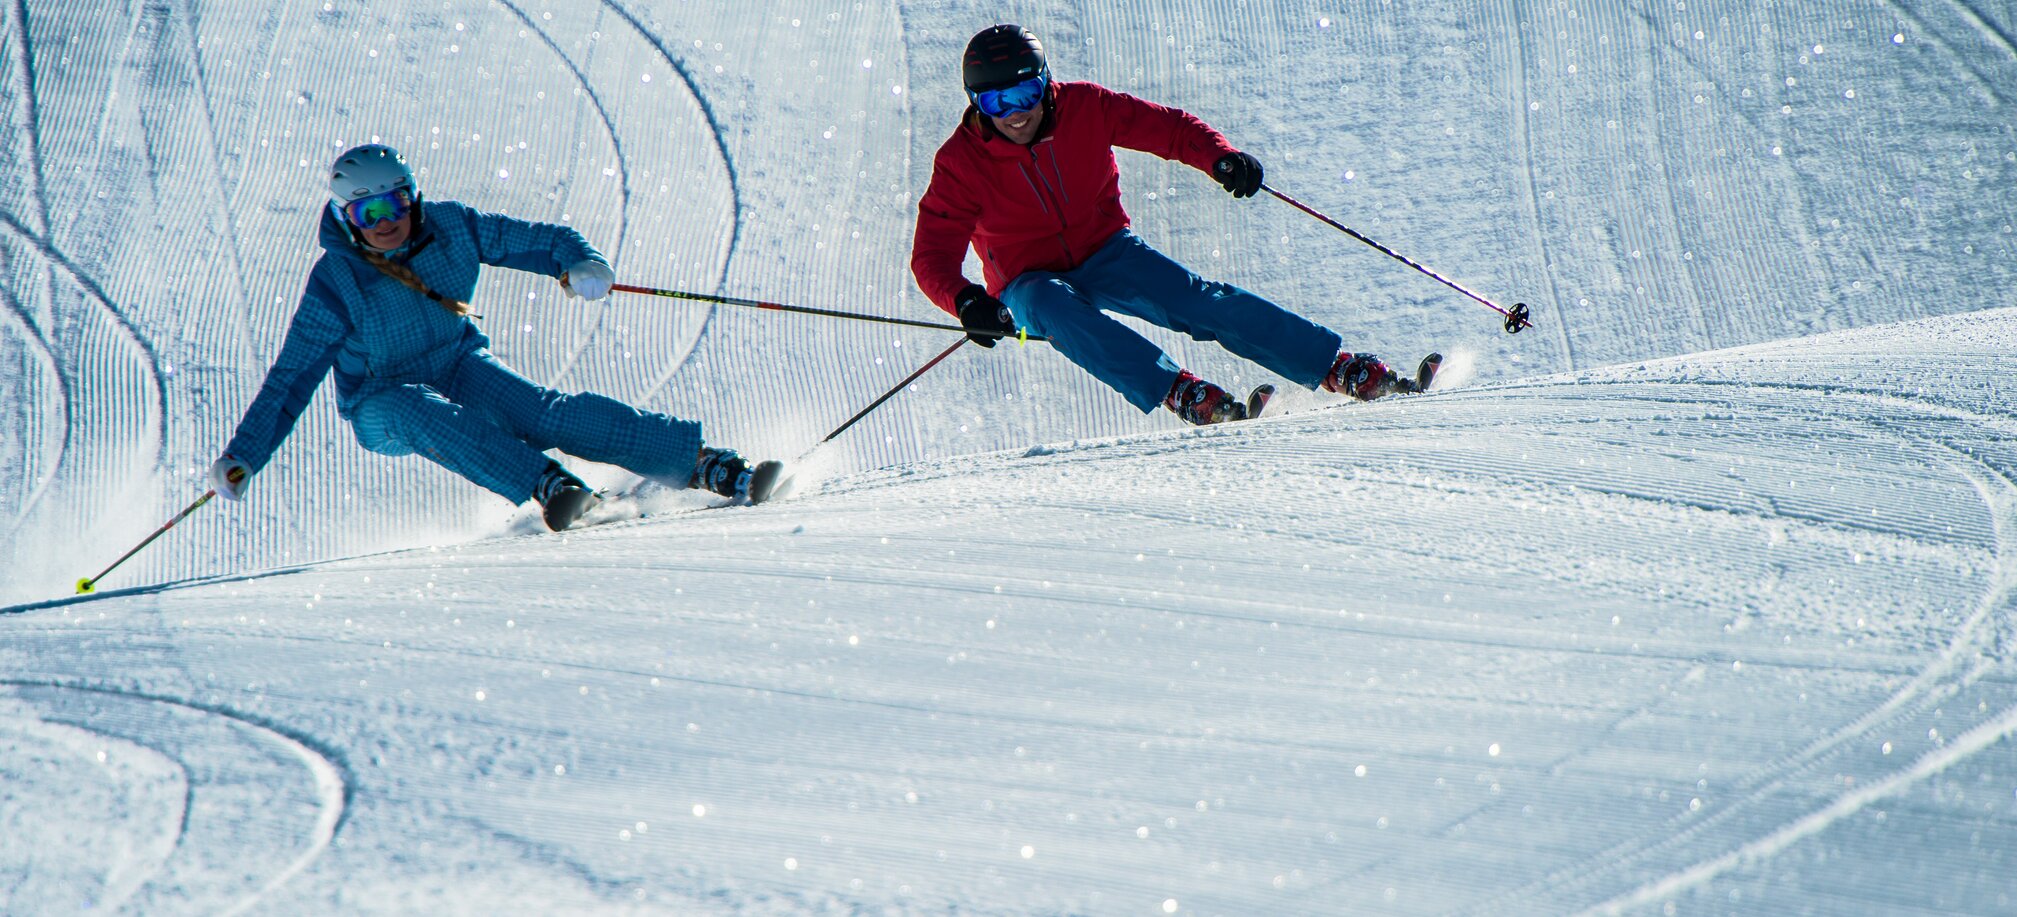 Zwei Personen  carven gemeinsam über die Pisten in Ski amadé.